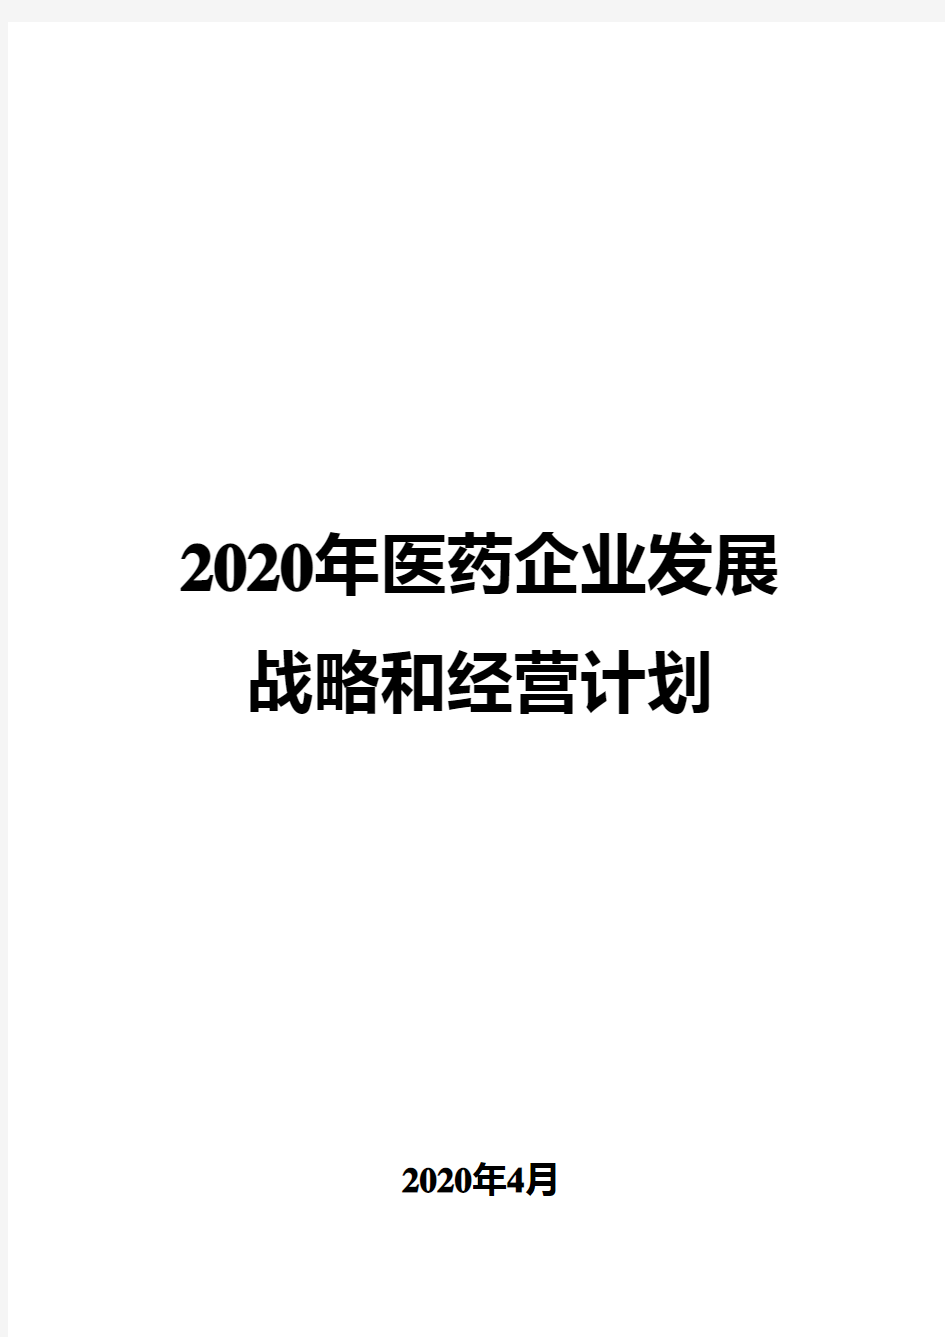 2020年医药企业发展战略和经营计划